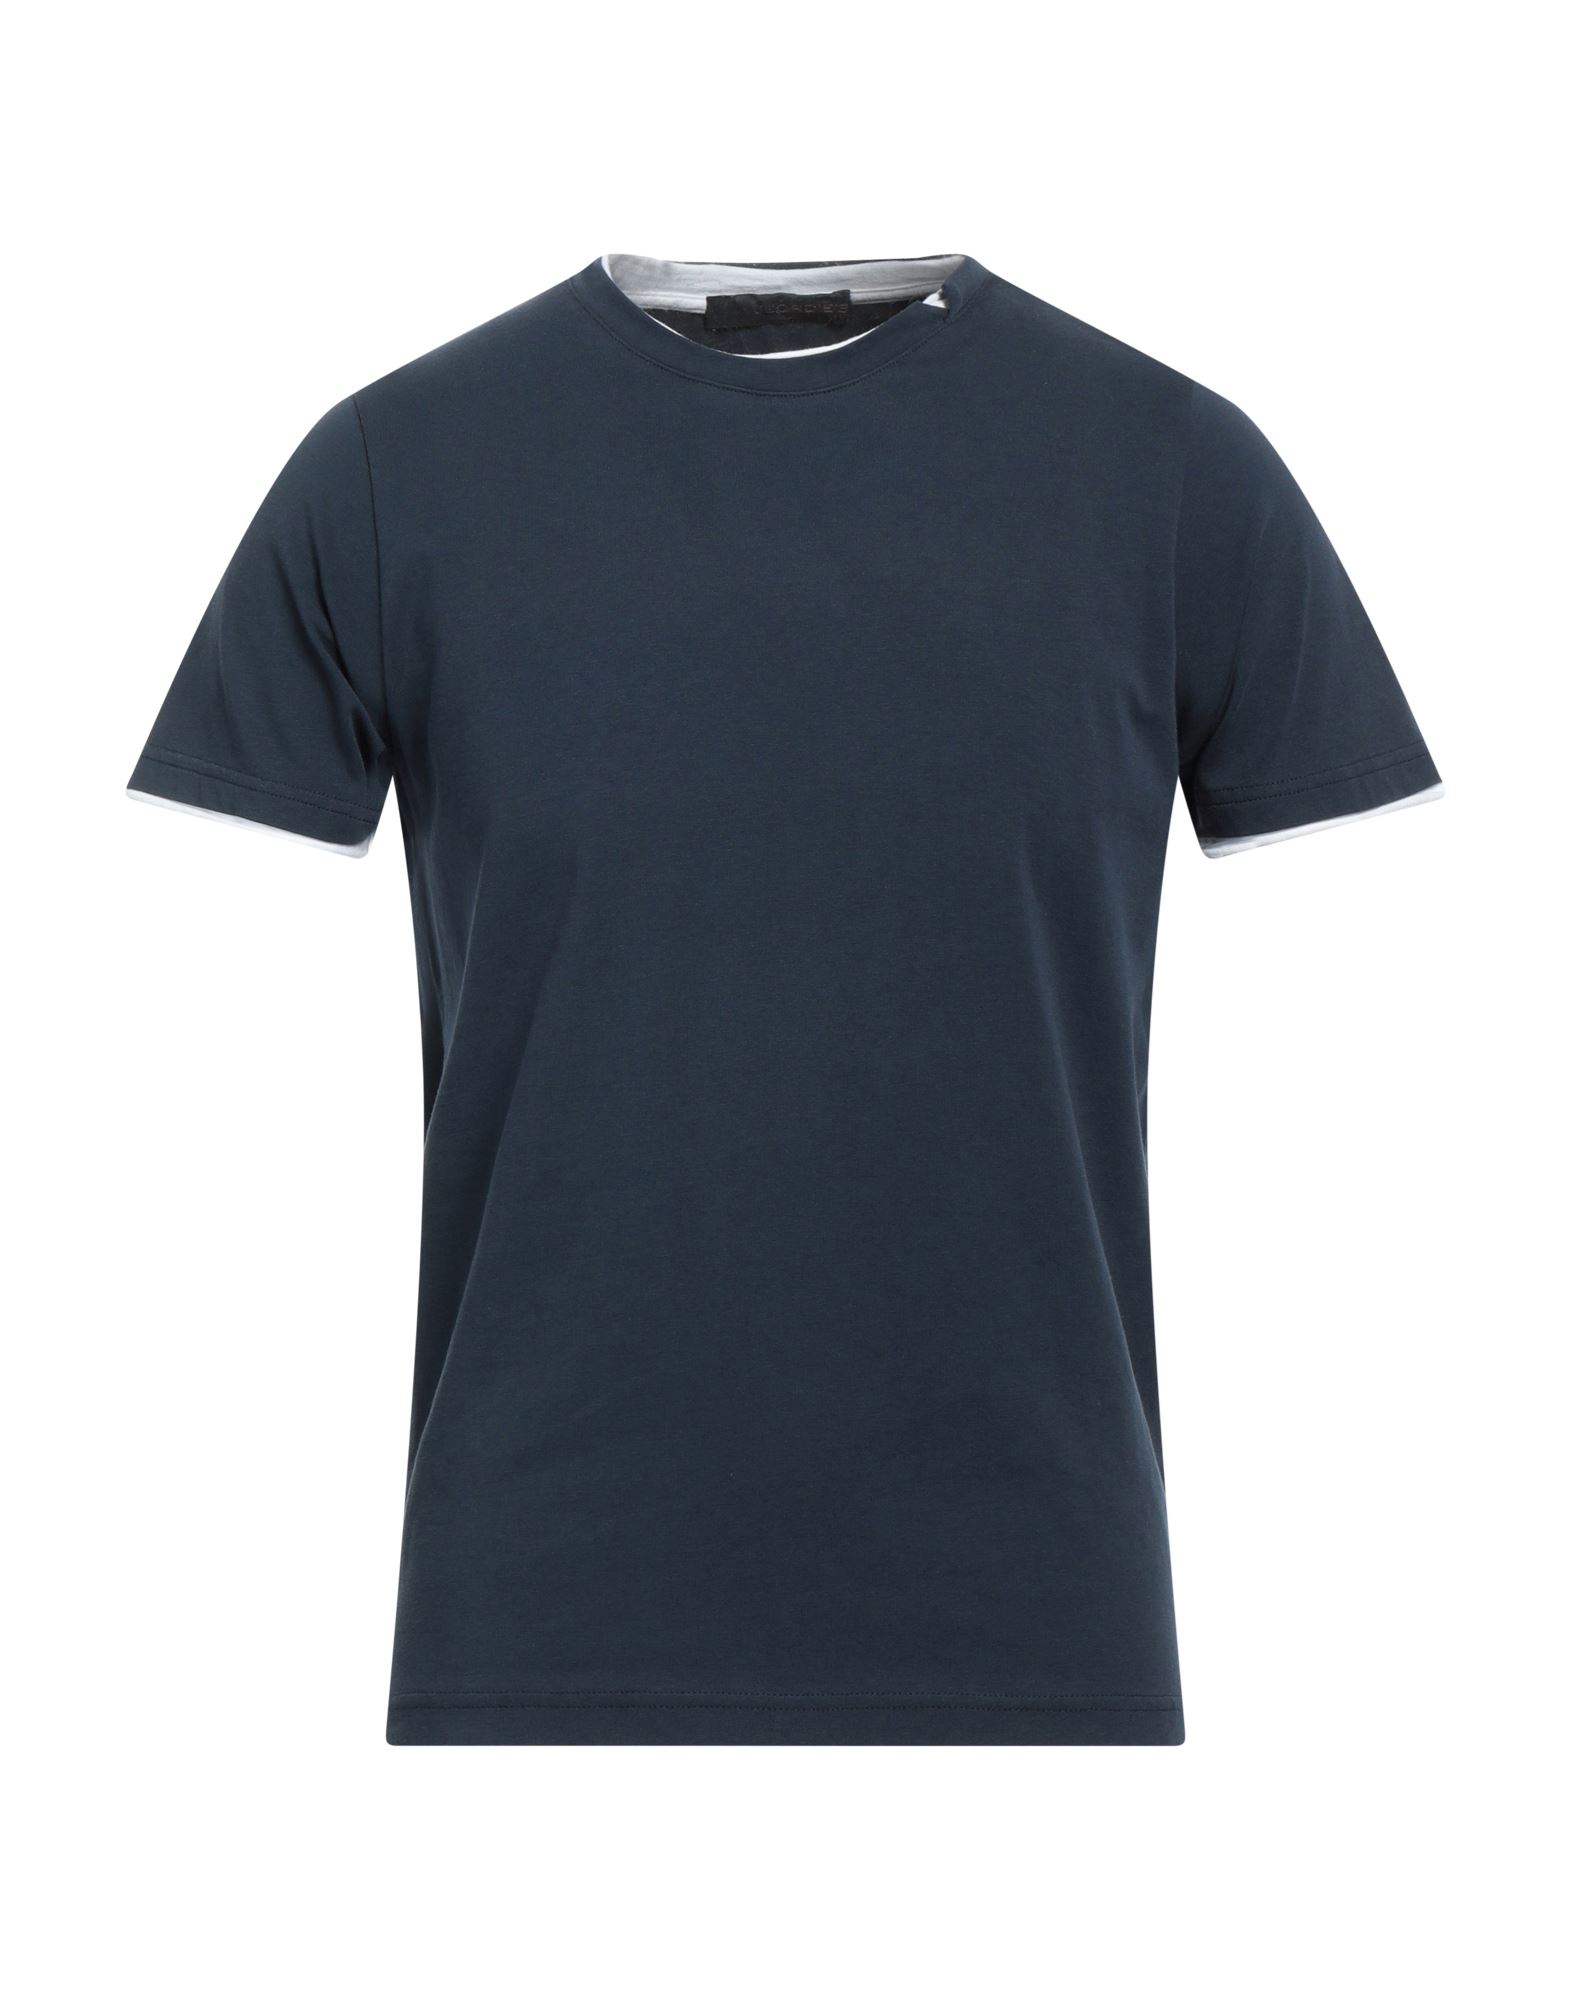 Jeordie's Man T-shirt Midnight Blue Size S Cotton, Elastane